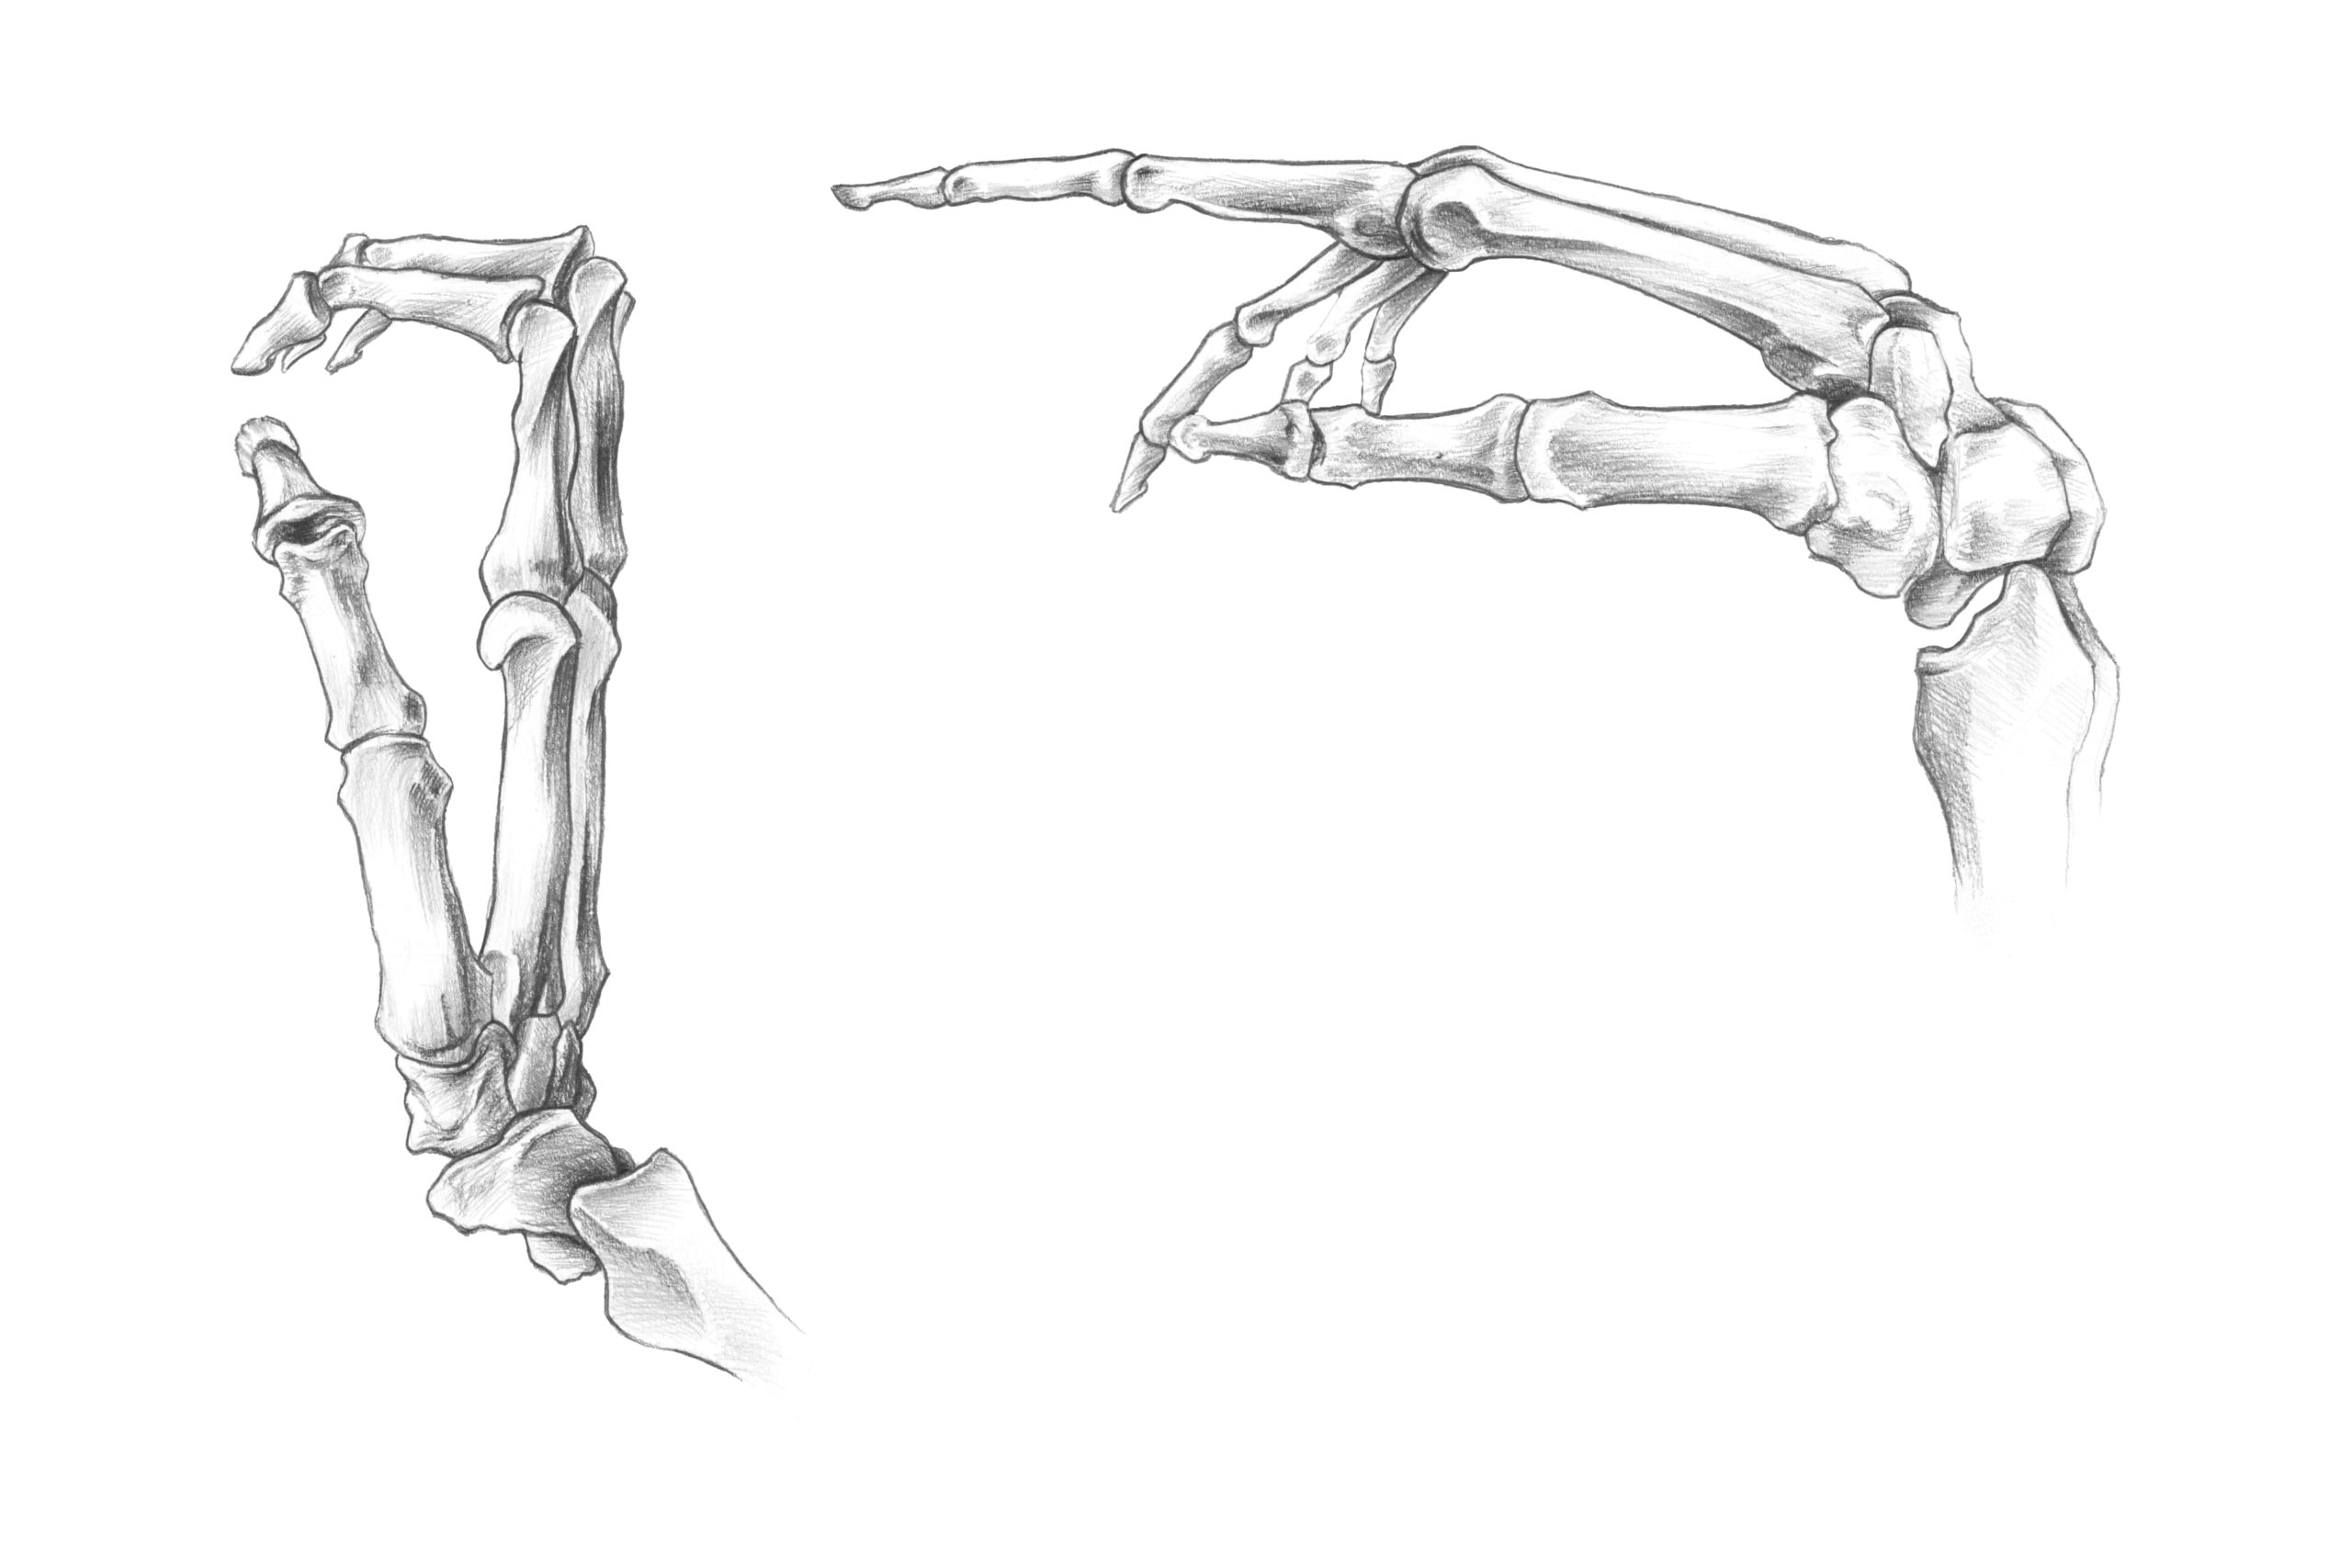 解剖学 手骨 手の骨 の構造を知っておこう スケッチ ナツヲカケル 兼業クリエイター雑記